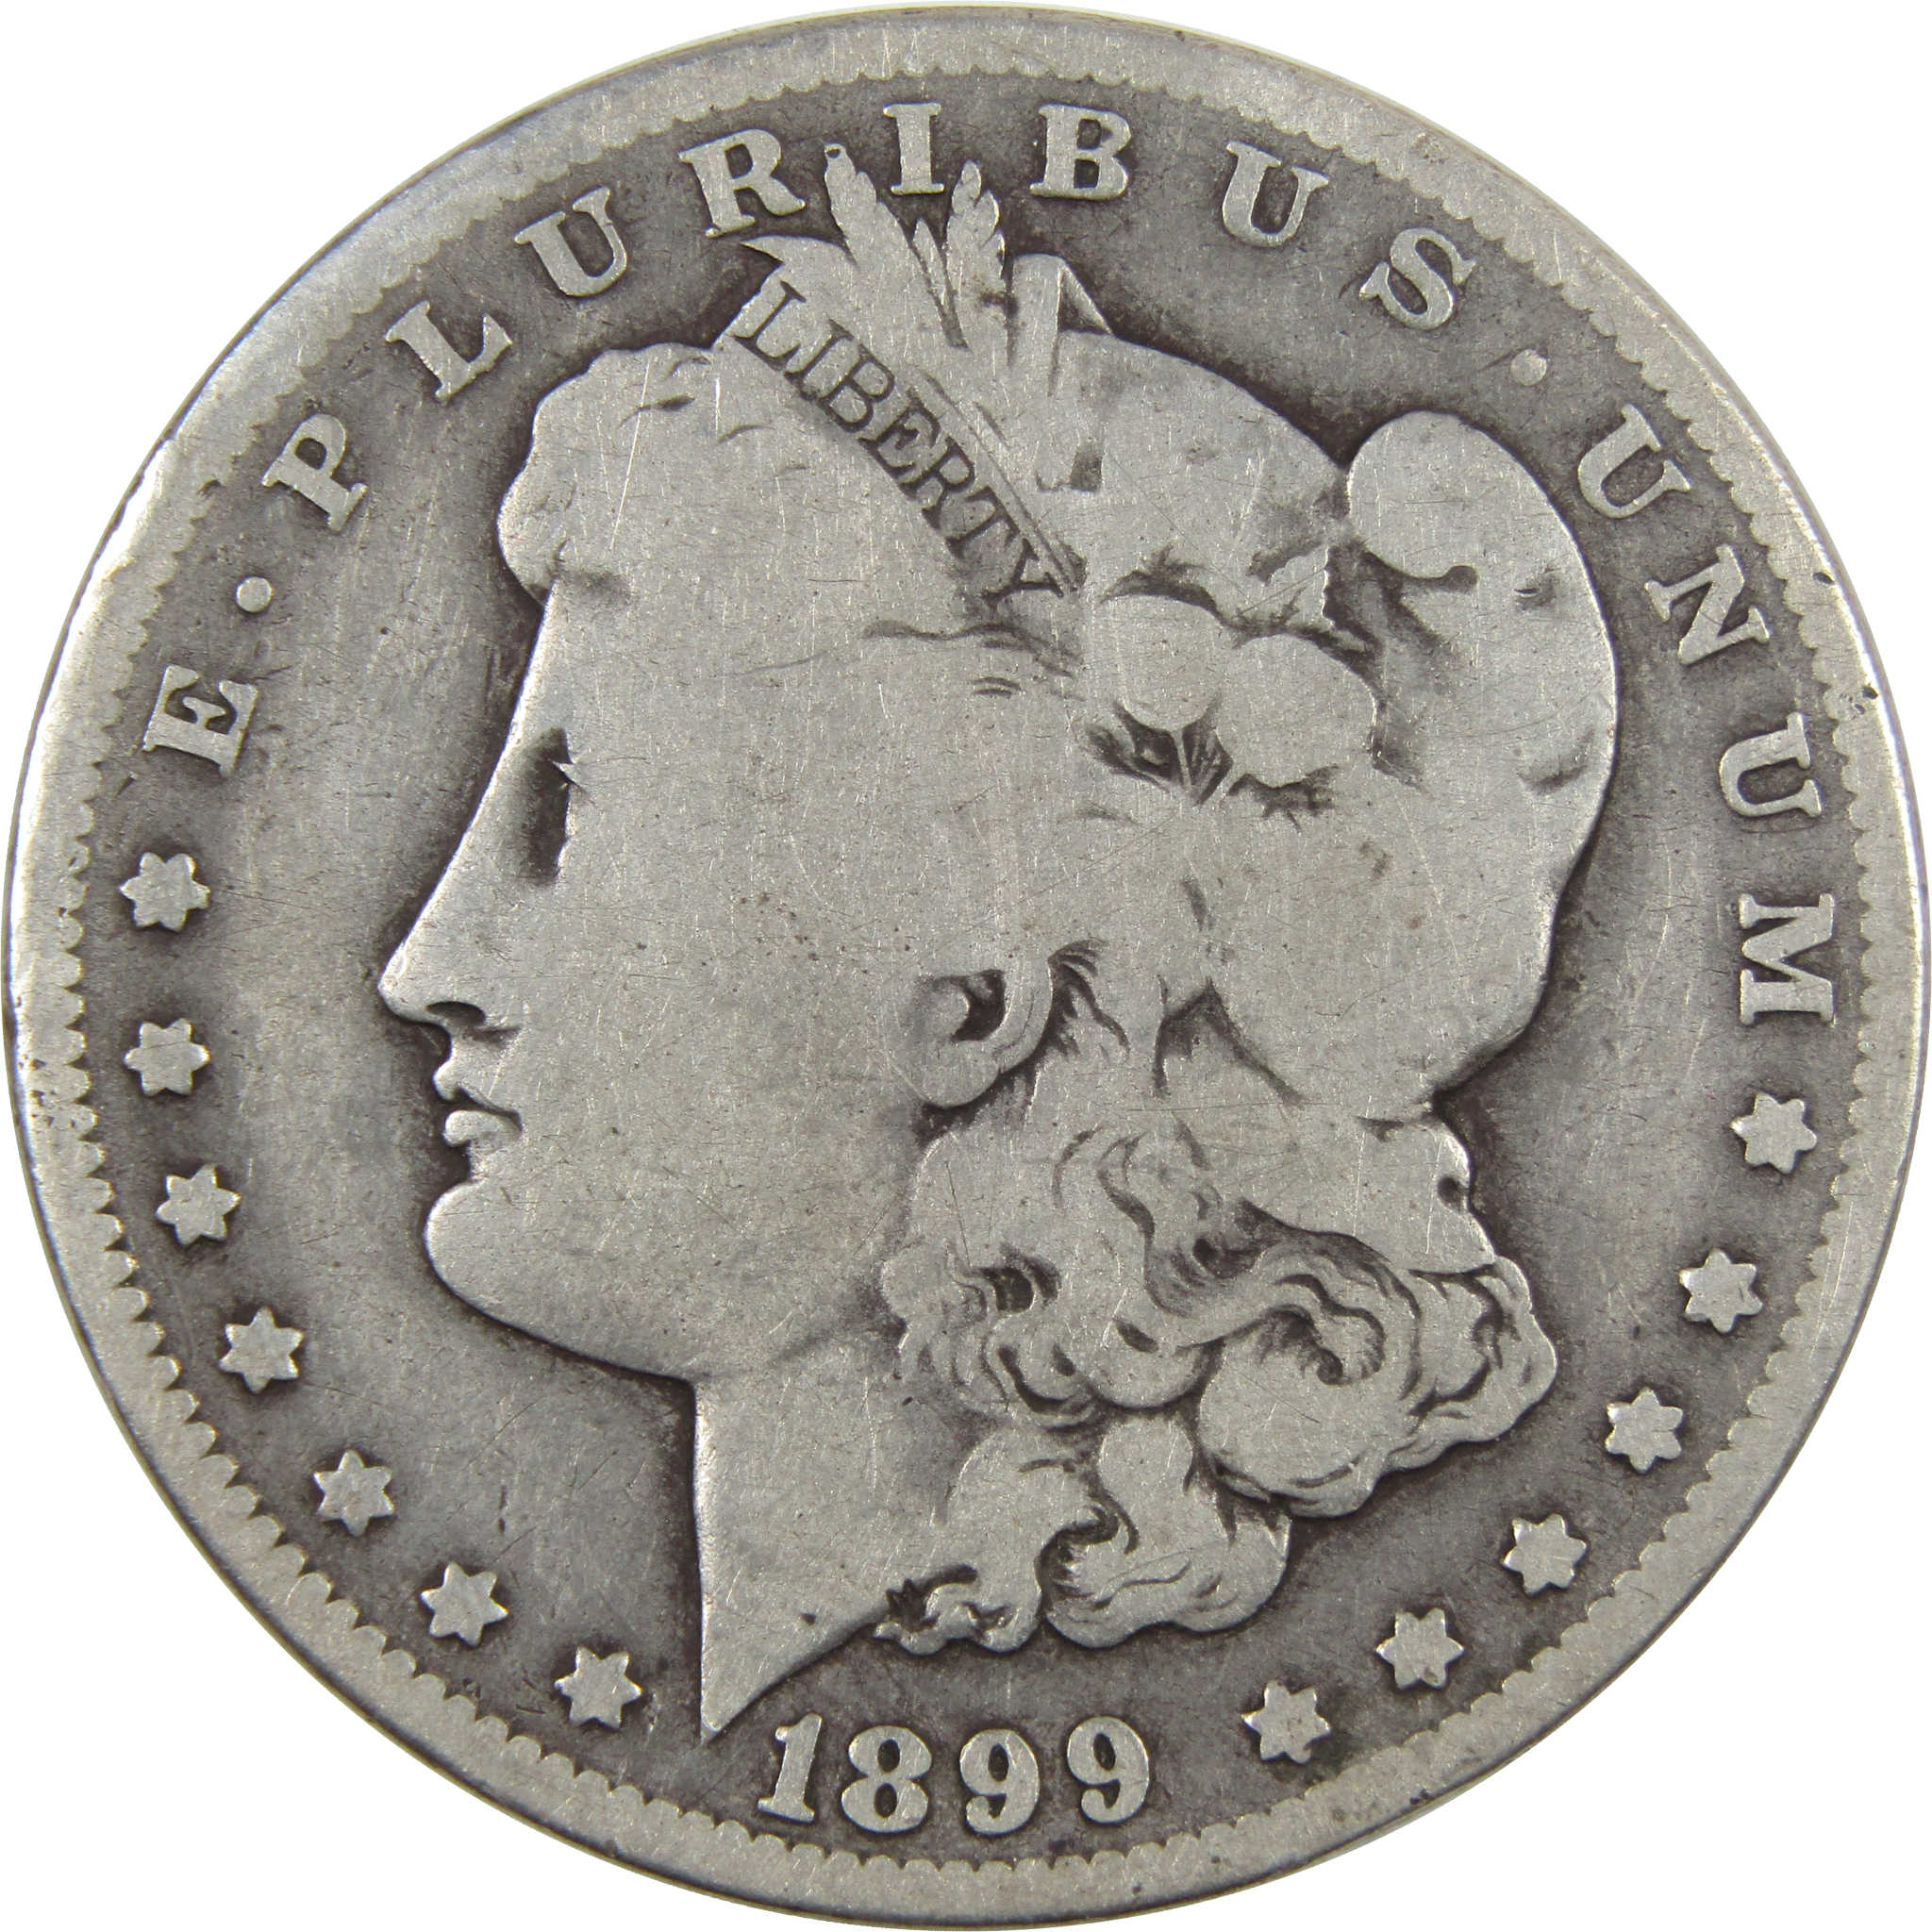 1899 O Micro O Morgan Dollar VG Very Good 90% Silver $1 Coin SKU:I4276 - Morgan coin - Morgan silver dollar - Morgan silver dollar for sale - Profile Coins &amp; Collectibles